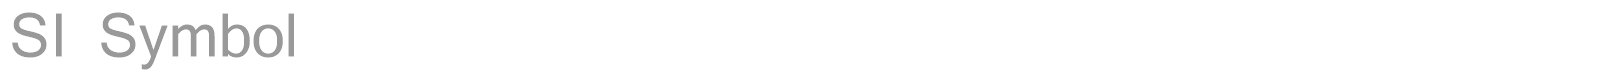 Font SI Symbol